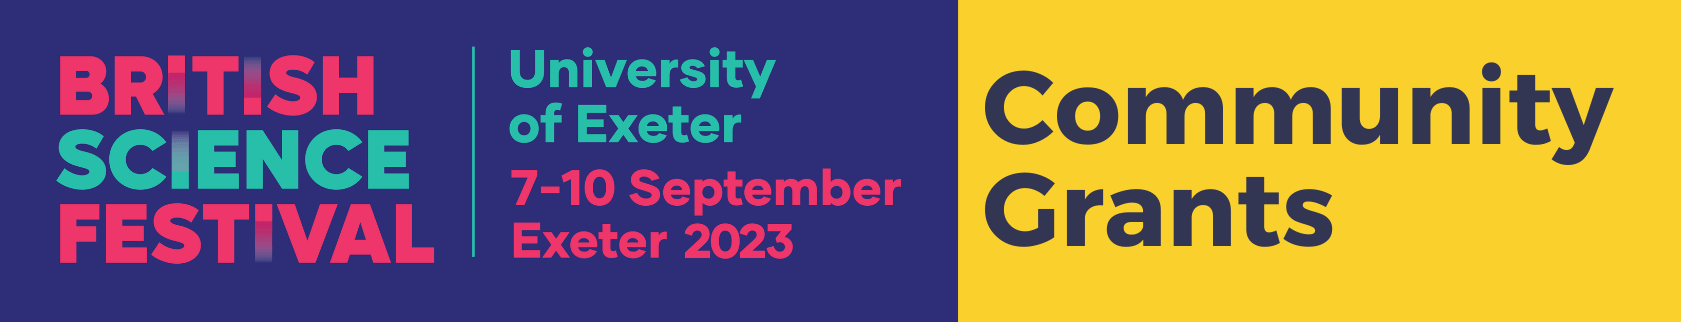 British Science Festival. University of Exeter. 7-10 September Exeter 2023. Community Grants